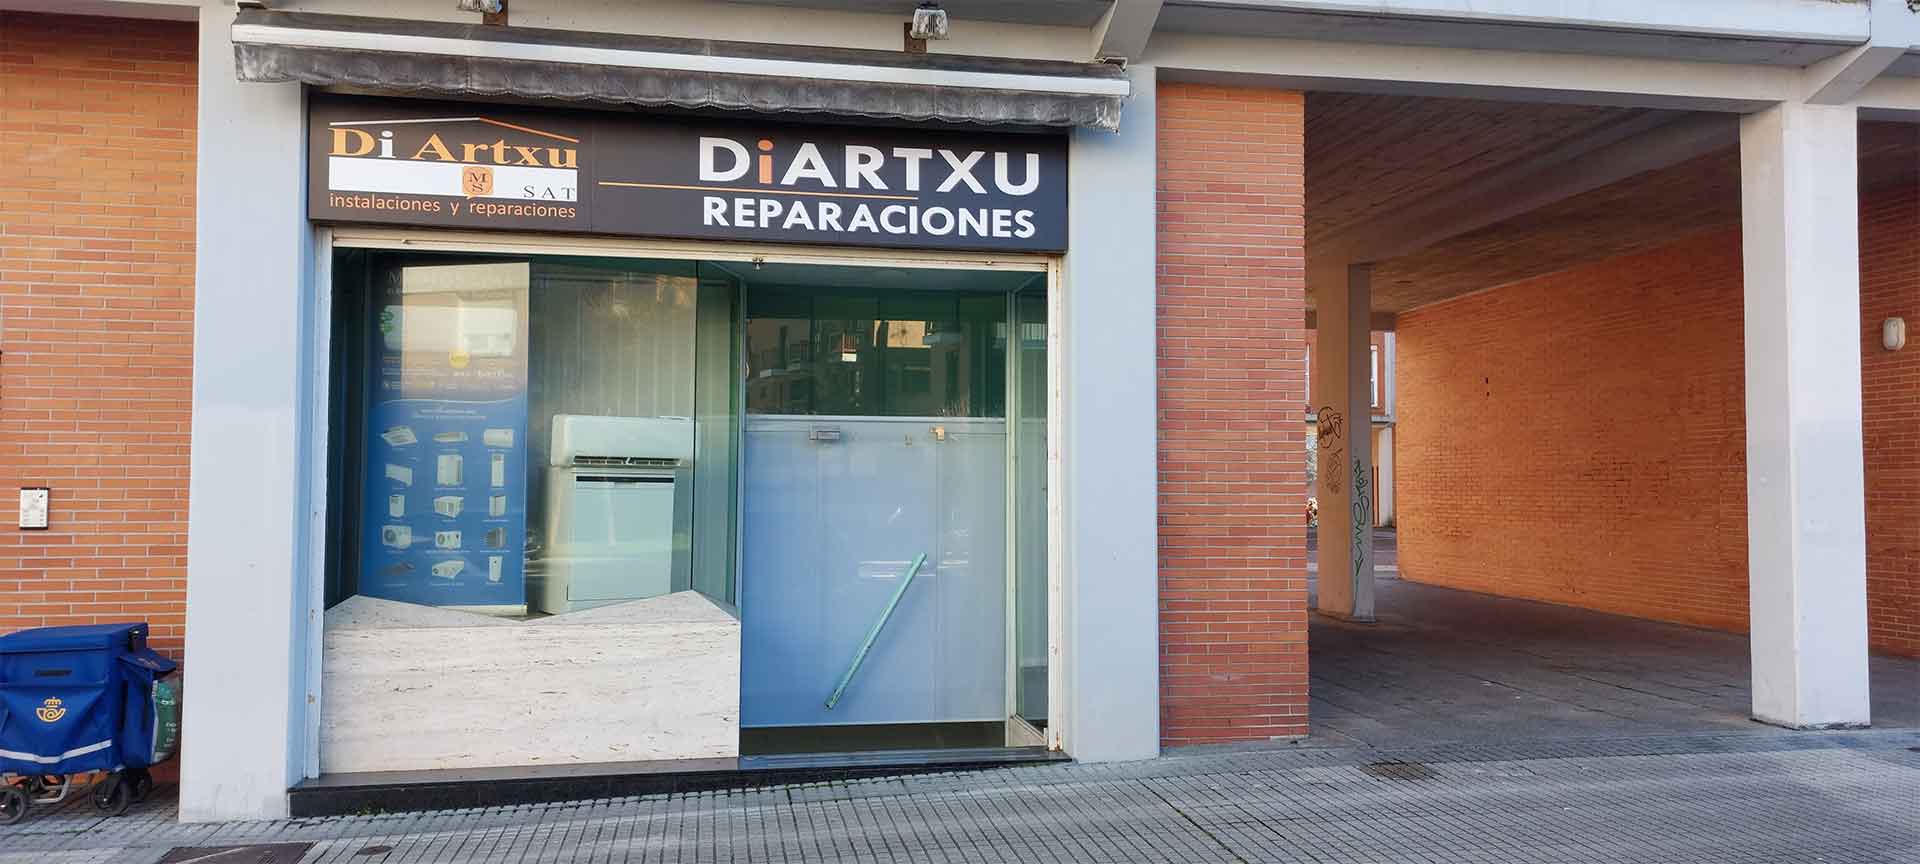 Reparaciones Diartxu exterior de tienda